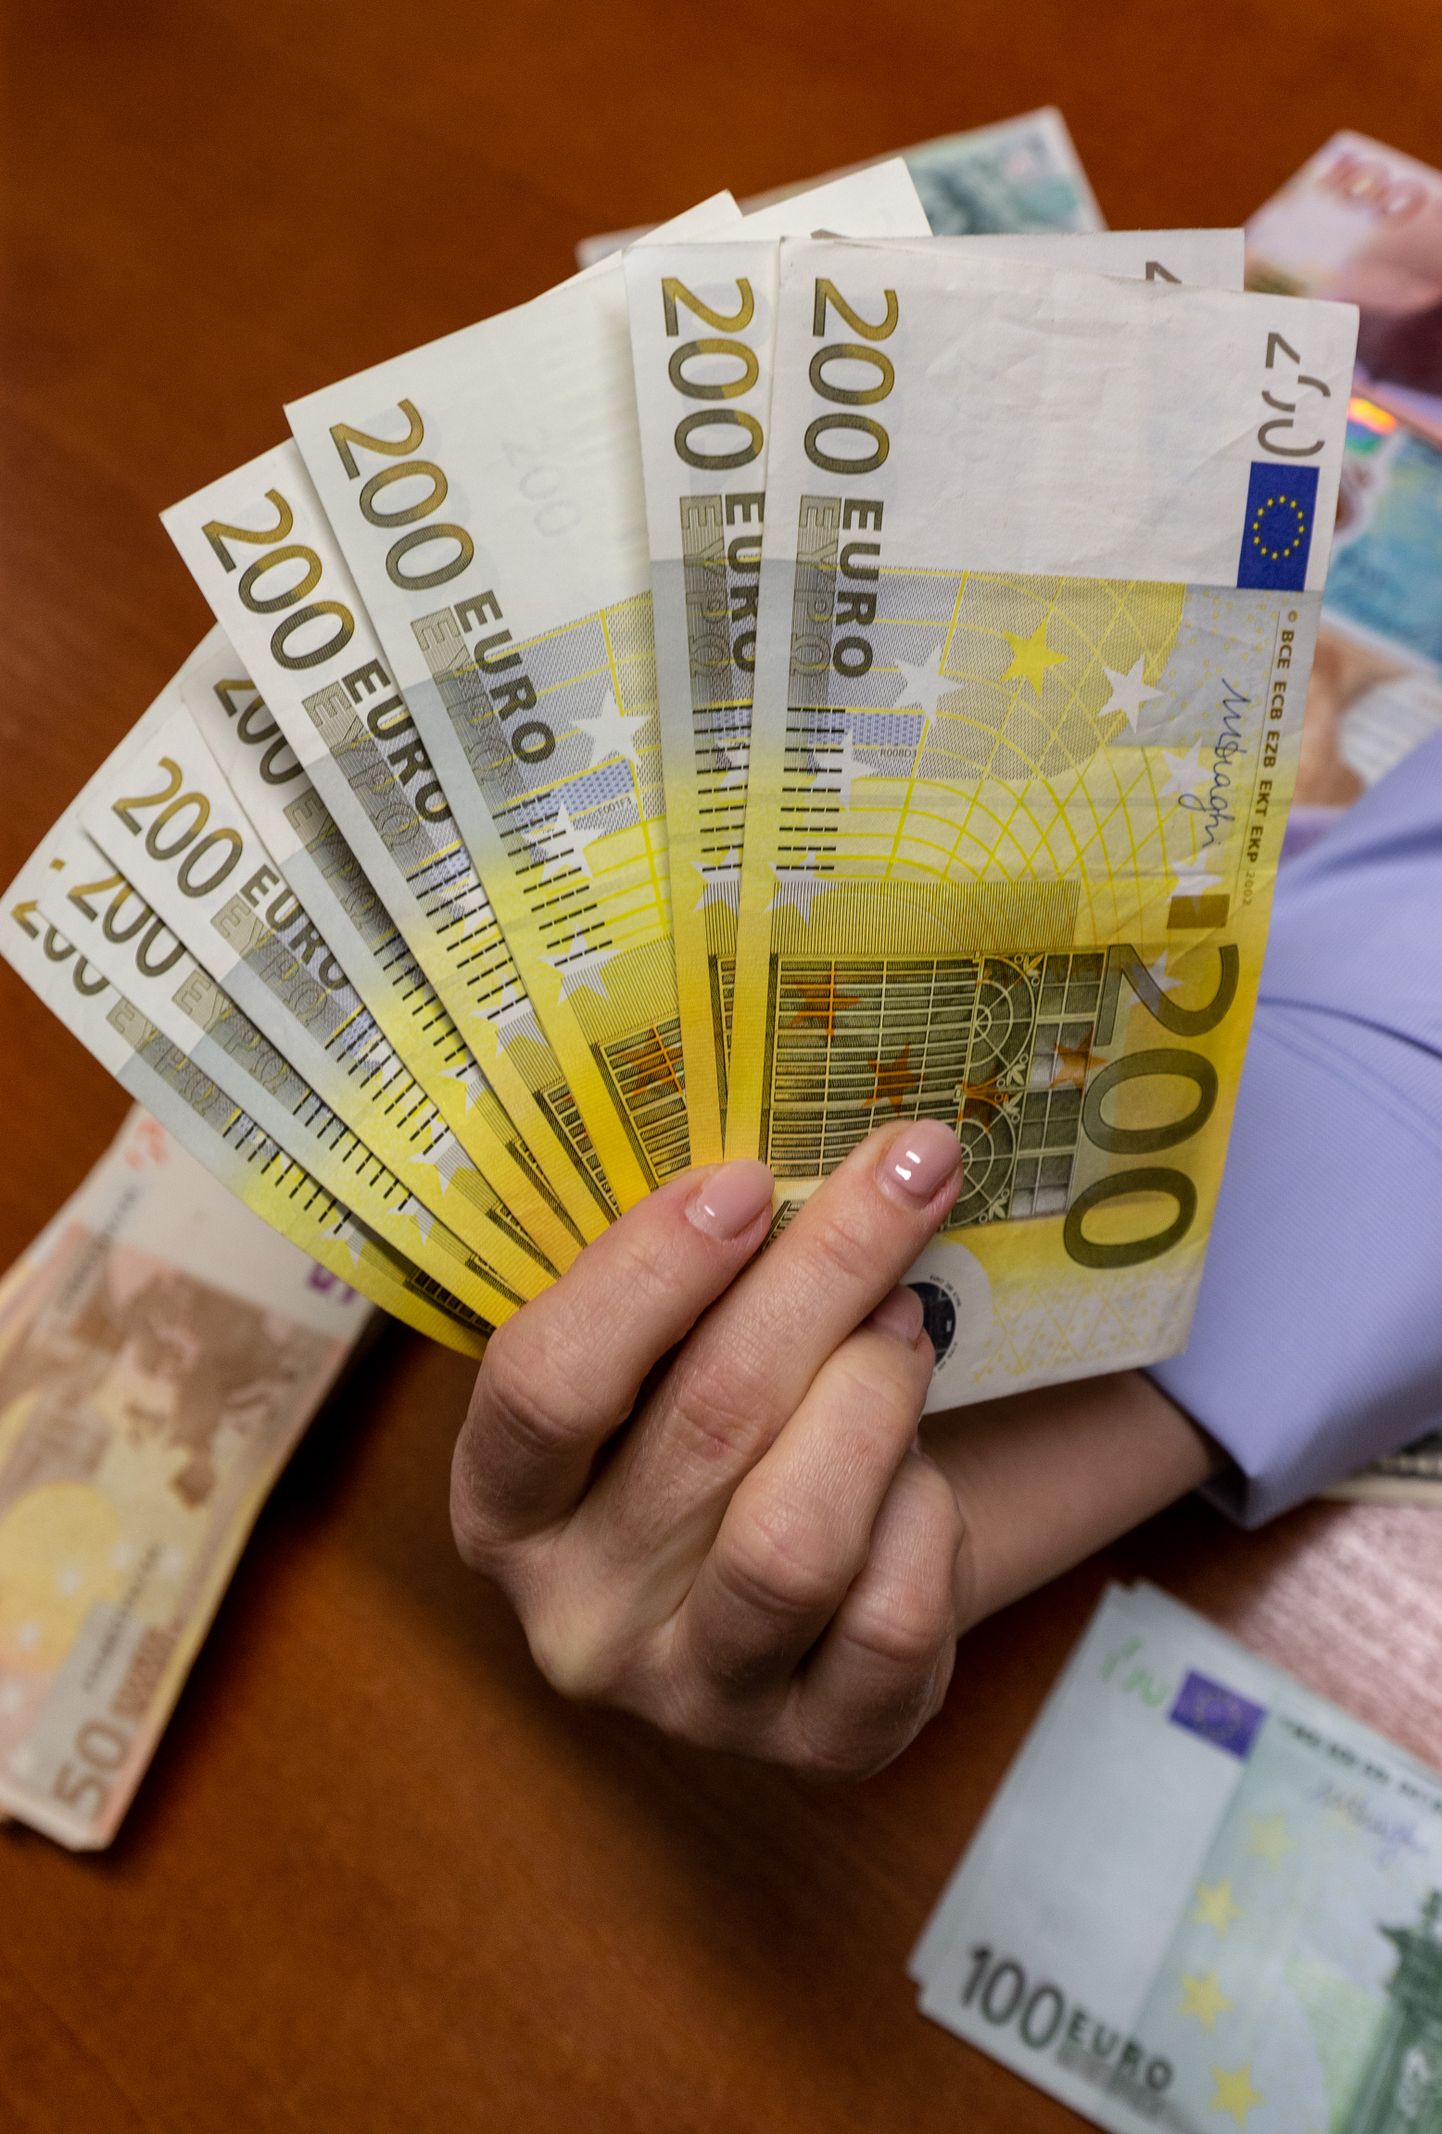 Kiirloterii Kullapada andis peavõidu 20 000 eurot.